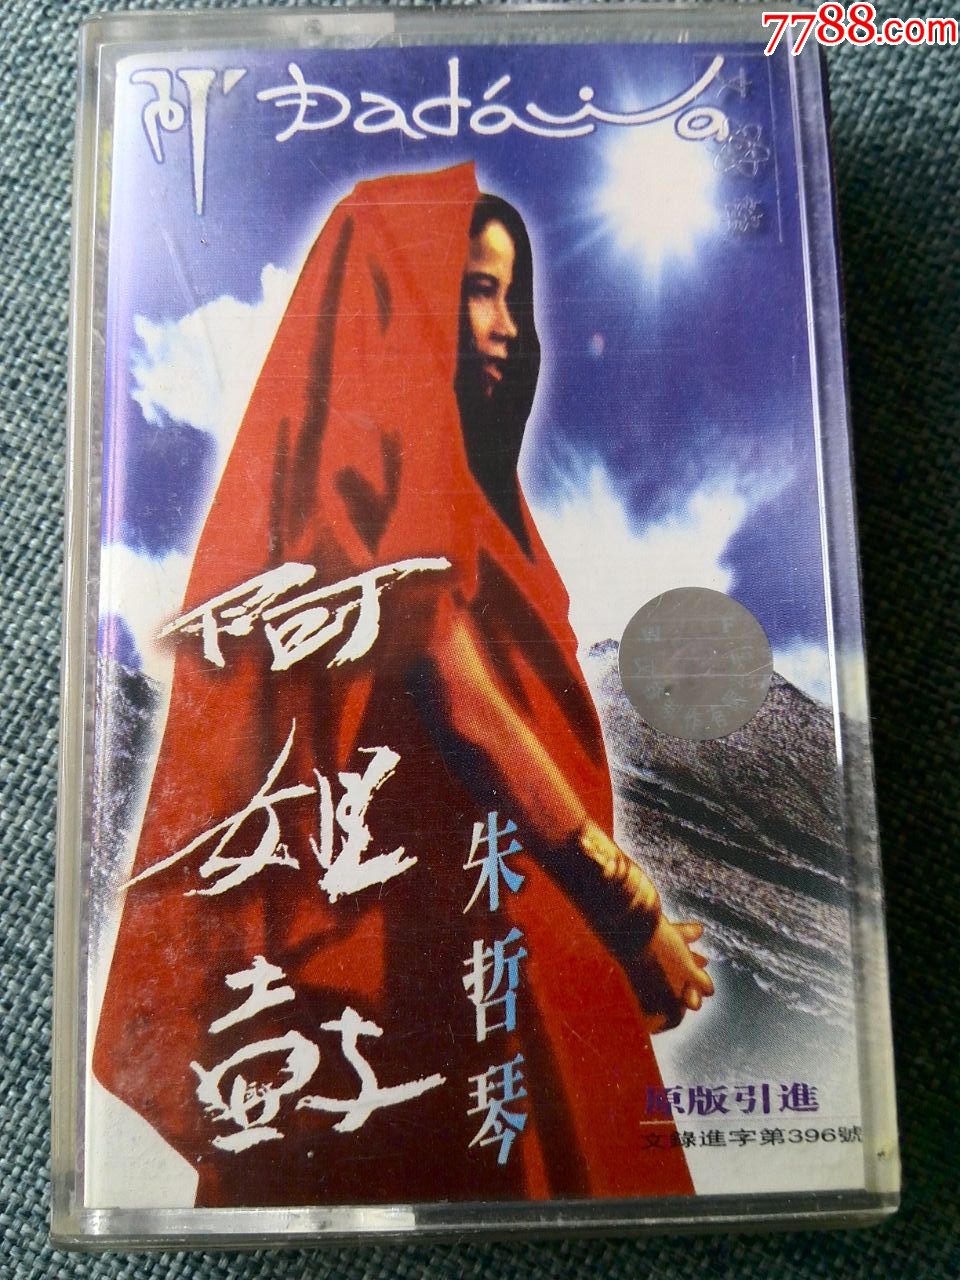 朱哲琴演唱专辑阿姐鼓台湾滚石唱片协作内蒙古音像出版社出版